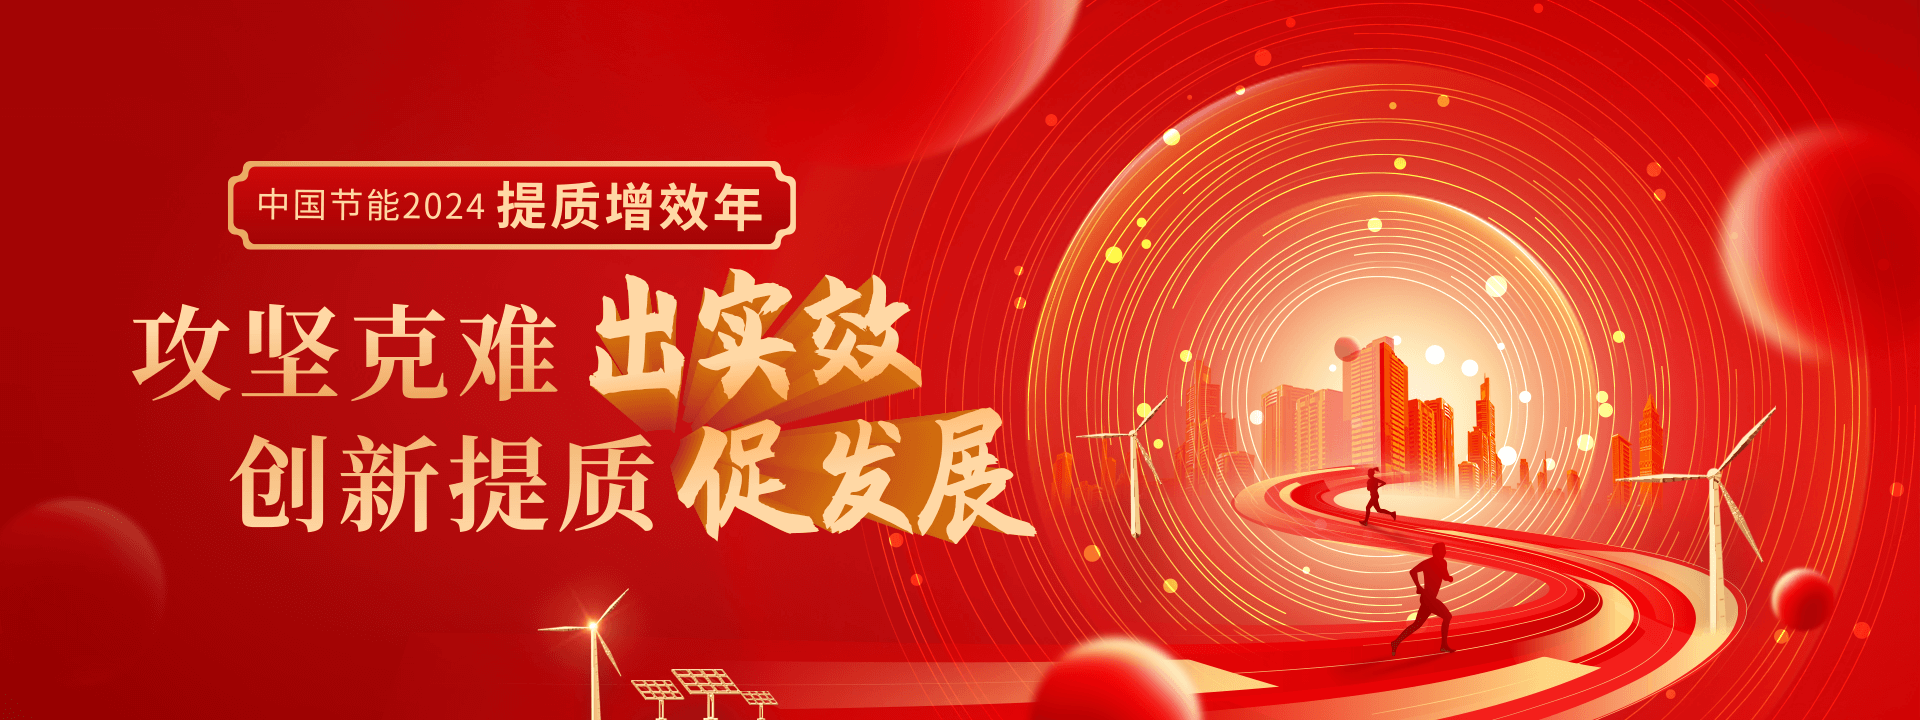 中国冠军体育CMP2024提质增效年